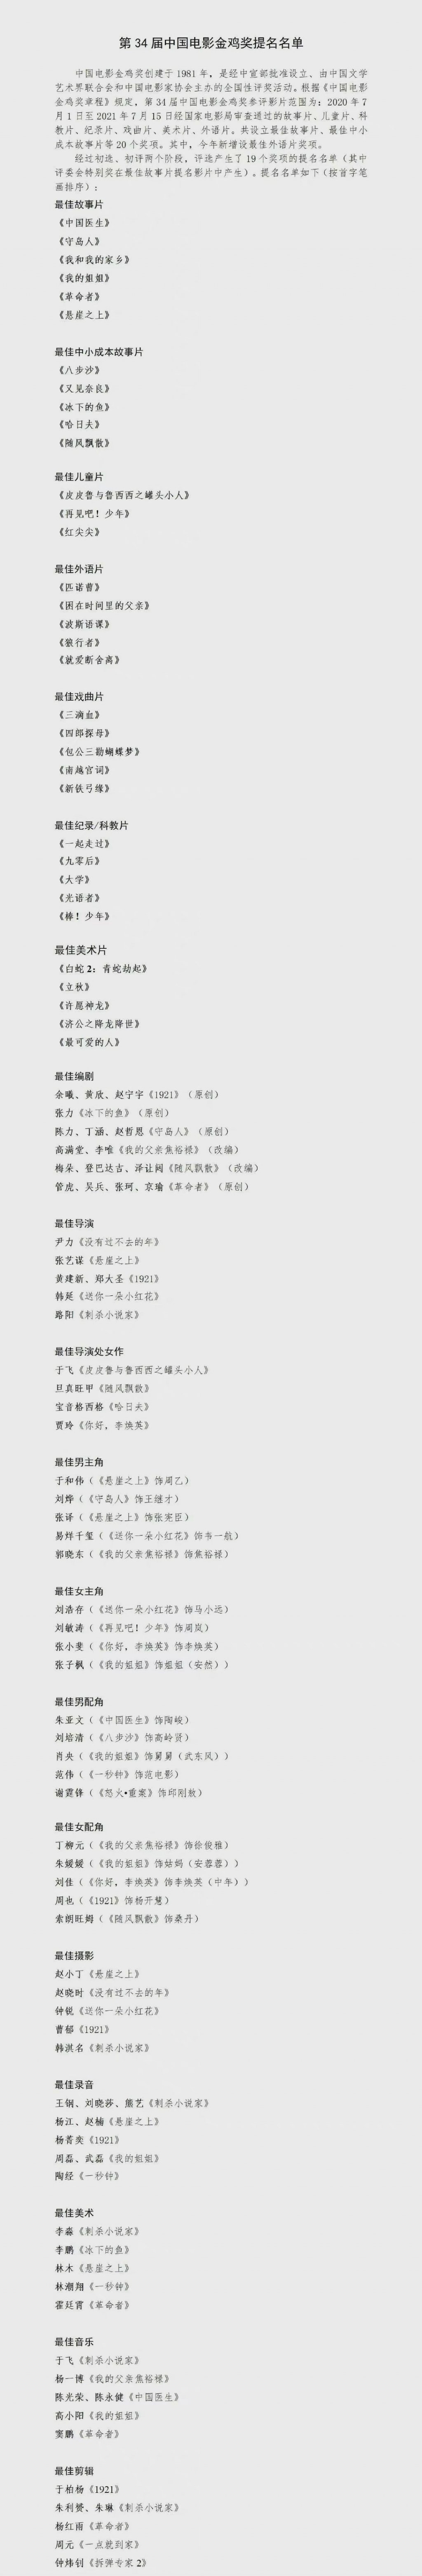 Danh sách sao Hoa ngữ xuất hiện trong bảng đề cử Giải thưởng Kim Kê lần thứ 34